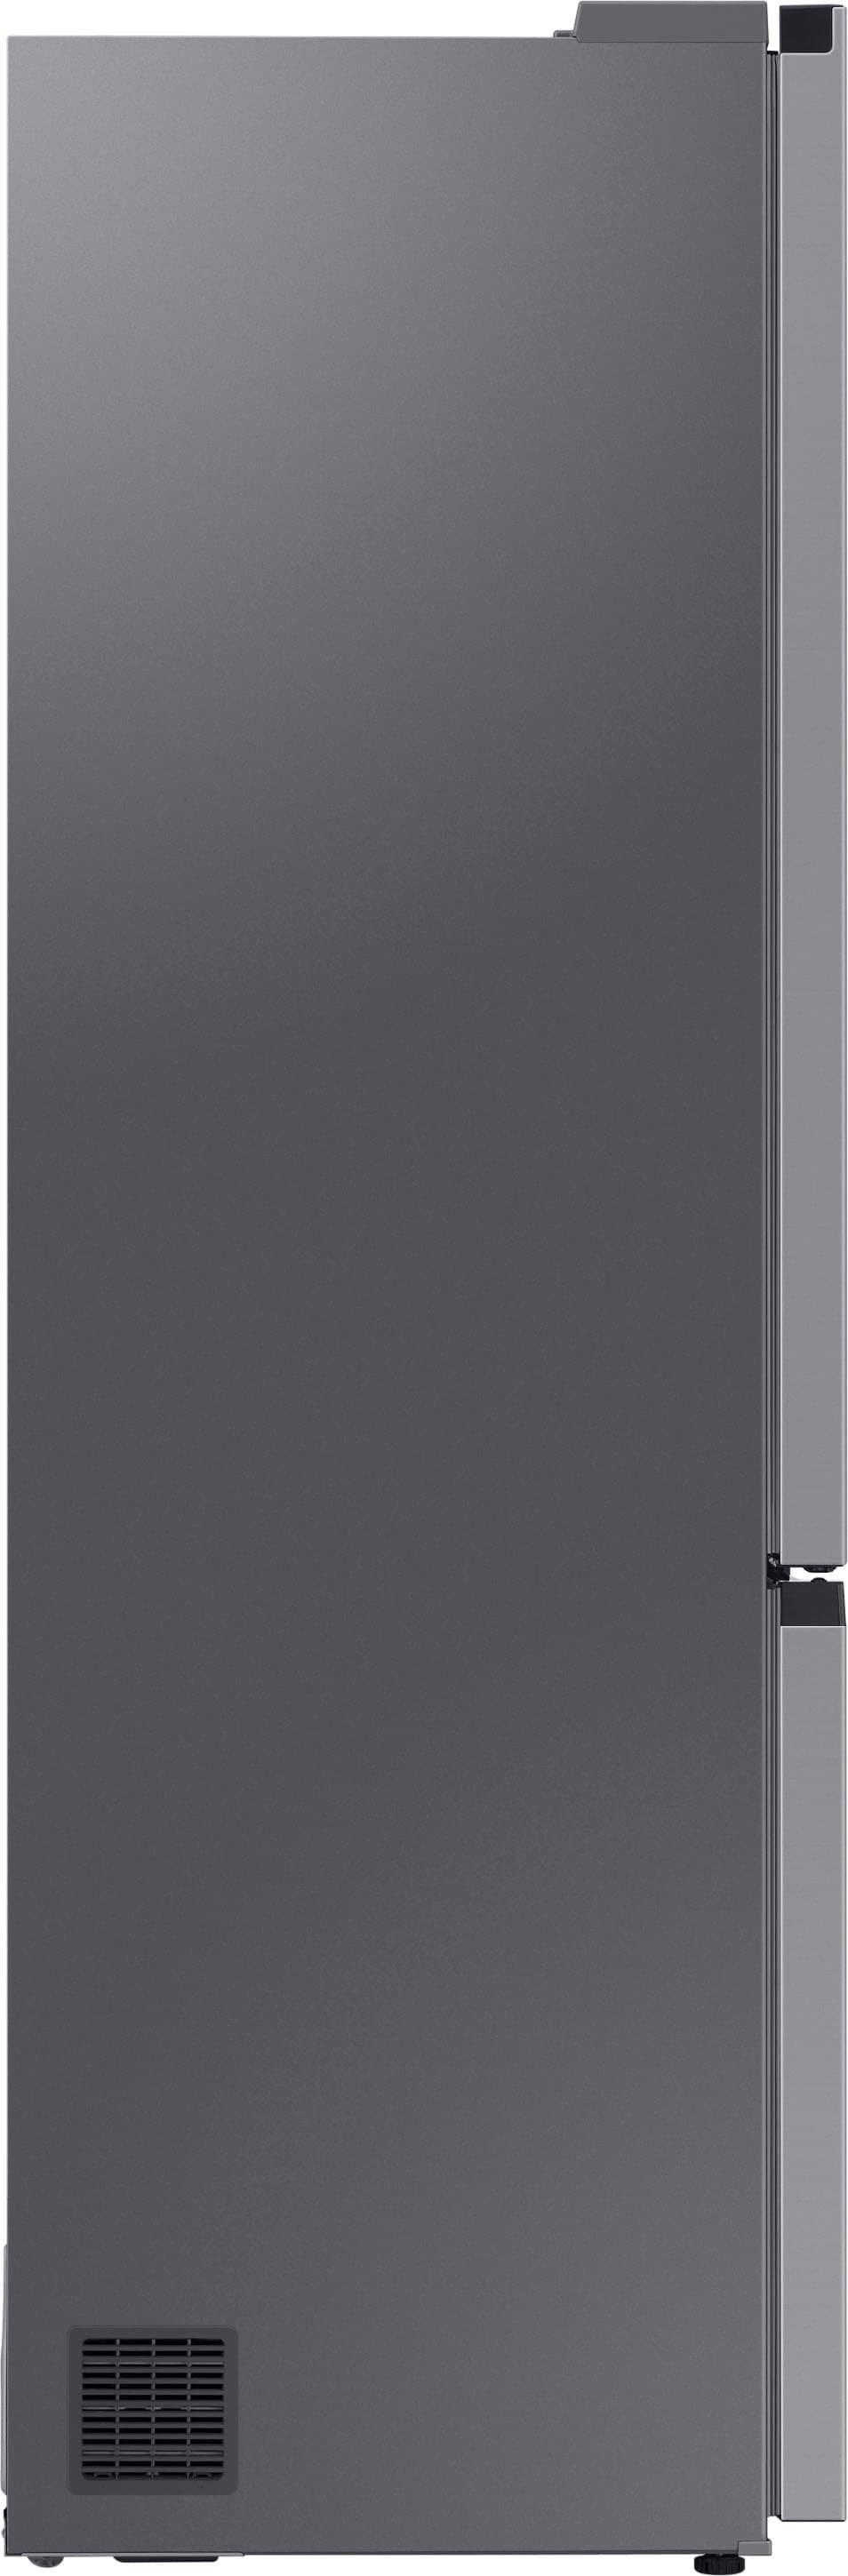 Samsung Kühl-/Gefrierkombination, RL38T600CSA, 203,0 cm hoch, 59,5 cm breit  online bestellen